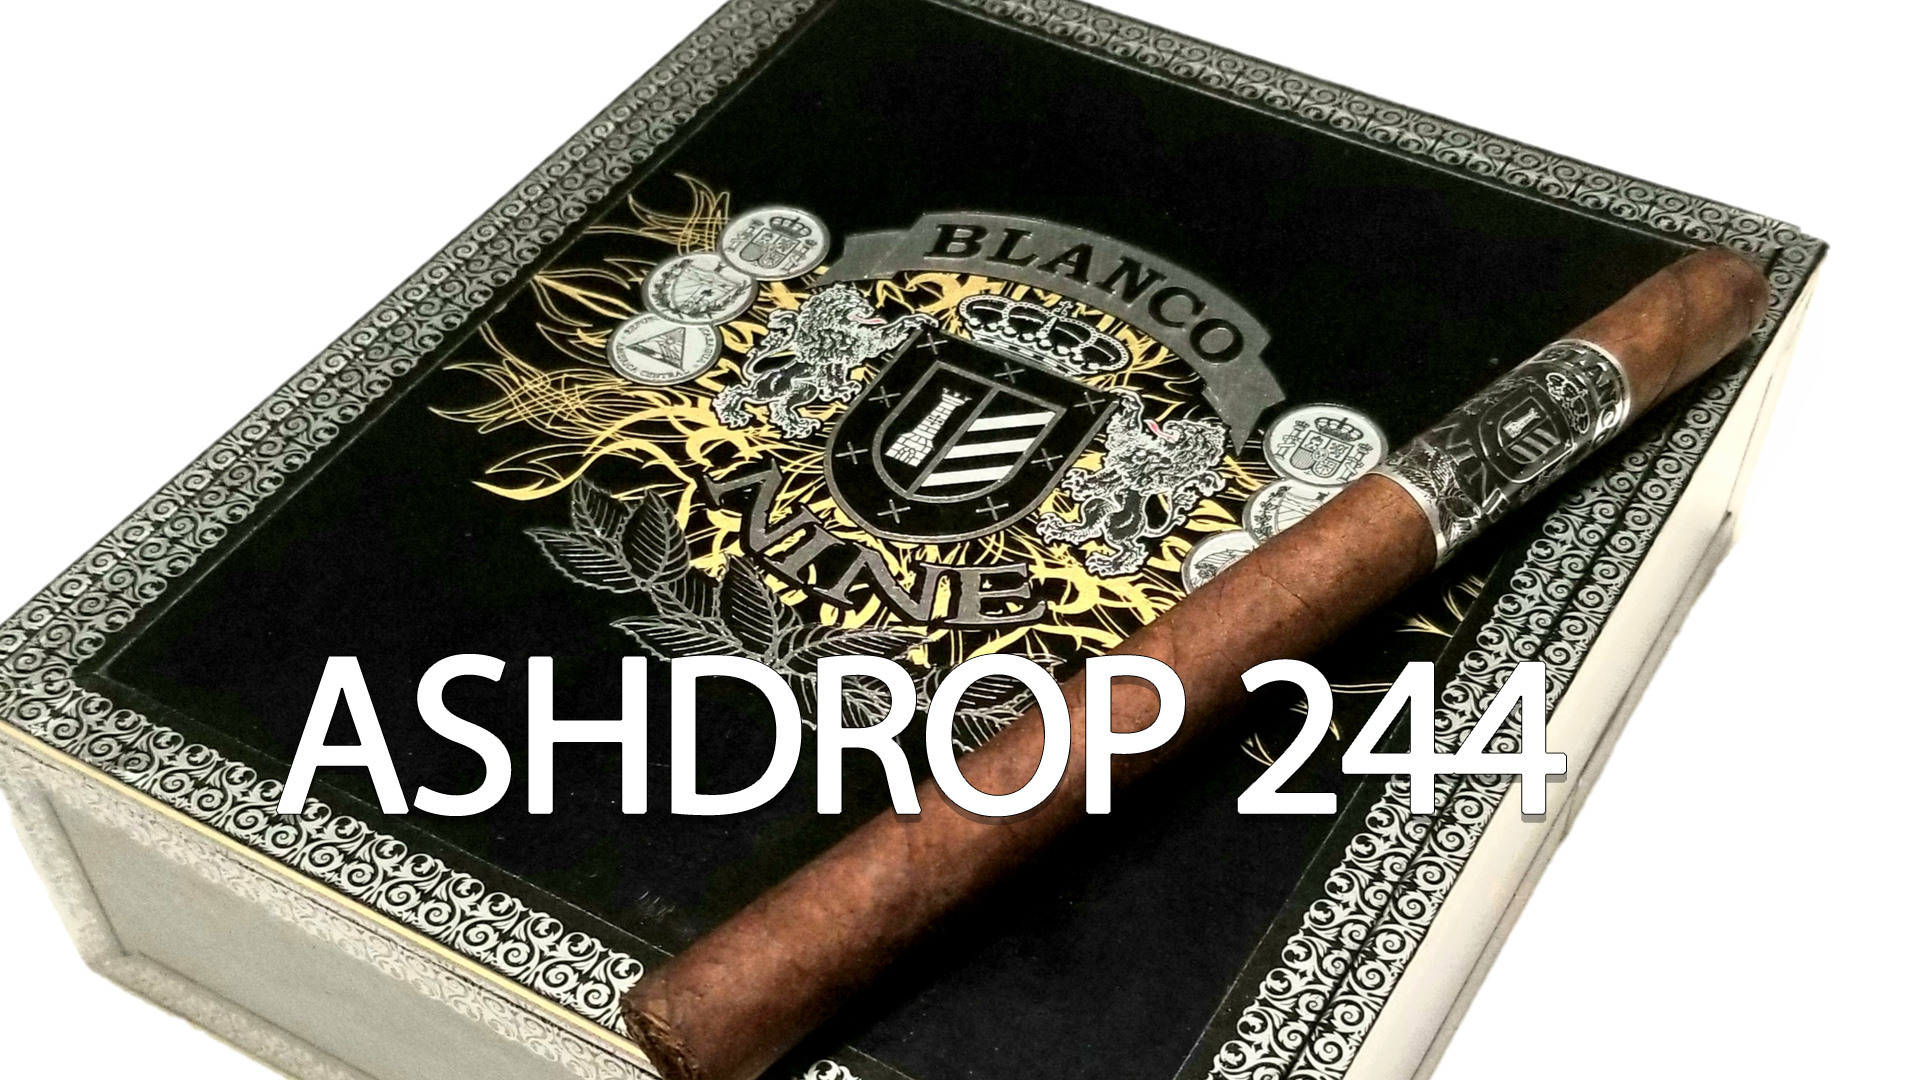 CigarAndPipes CO Ashdrop 244